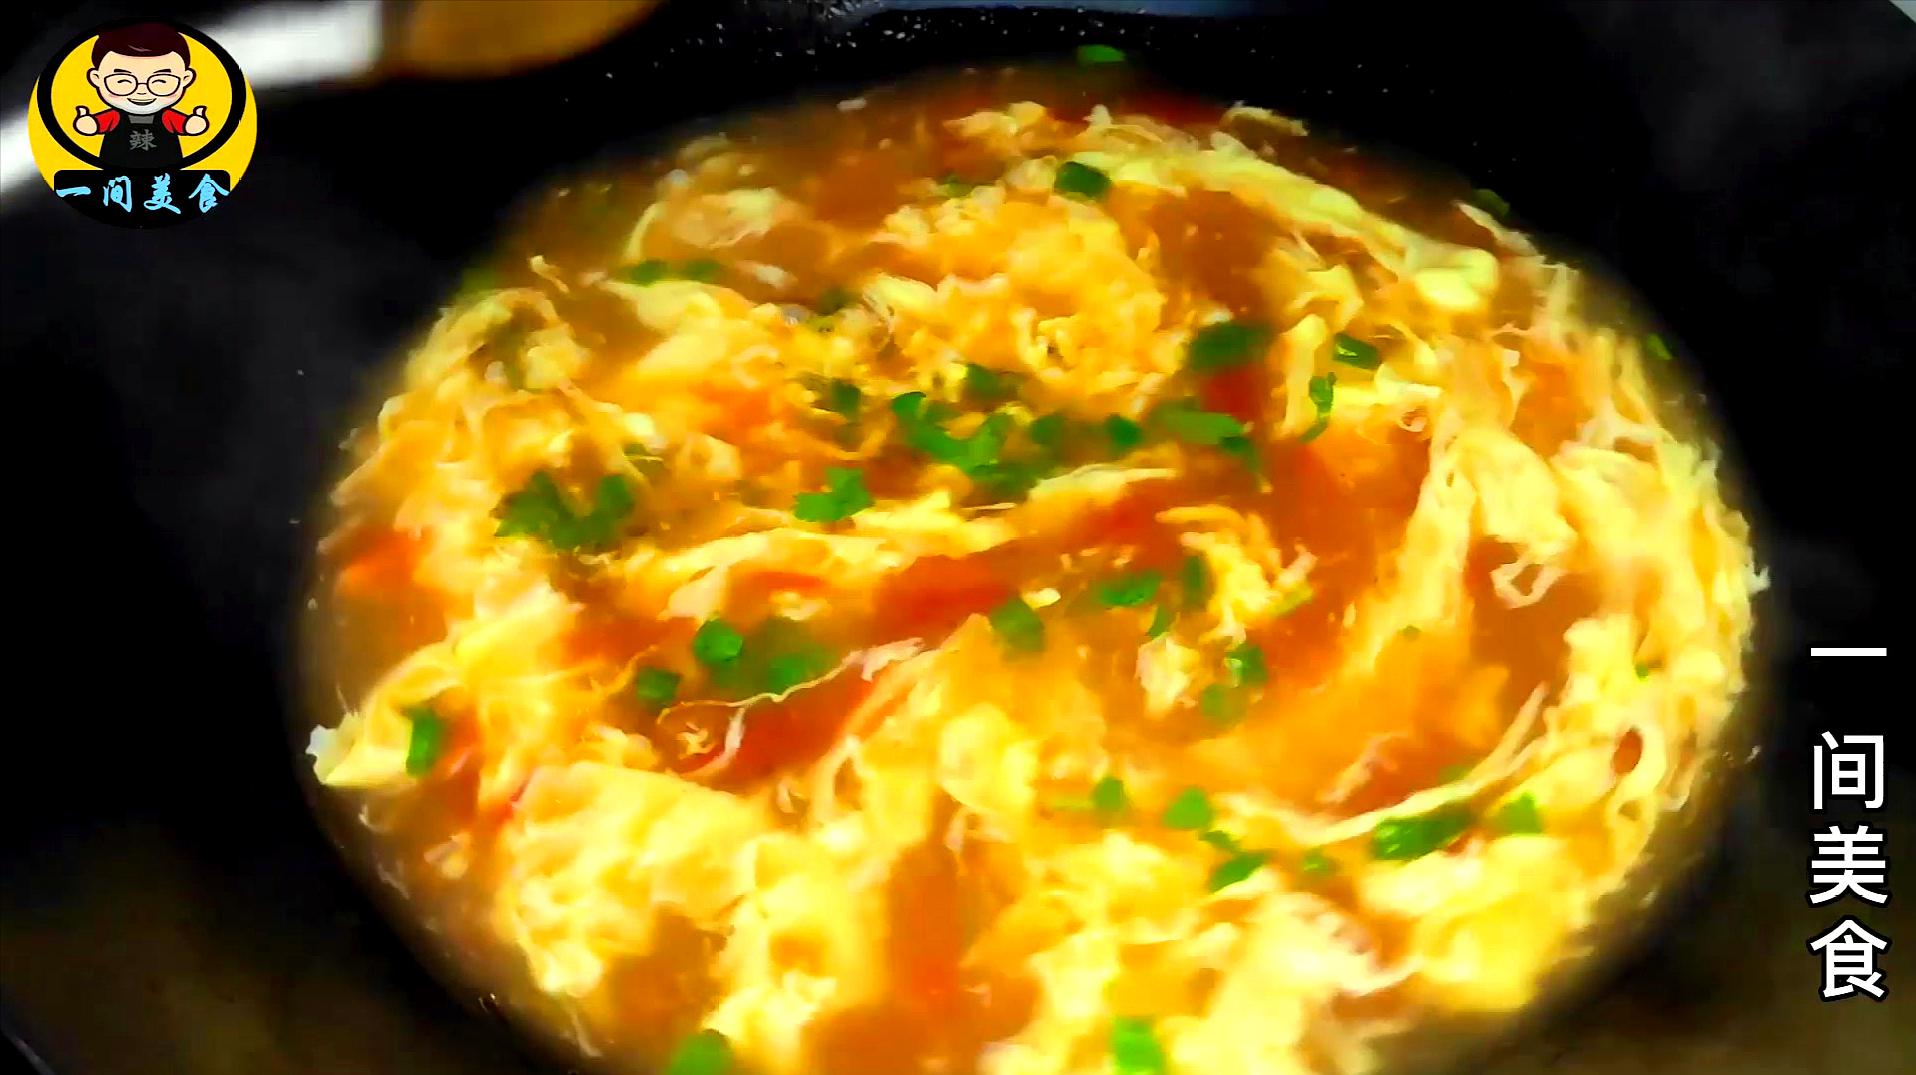 西红柿鸡蛋汤的做法_【图解】西红柿鸡蛋汤怎么做如何做好吃_西红柿鸡蛋汤家常做法大全_朵兰999_豆果美食